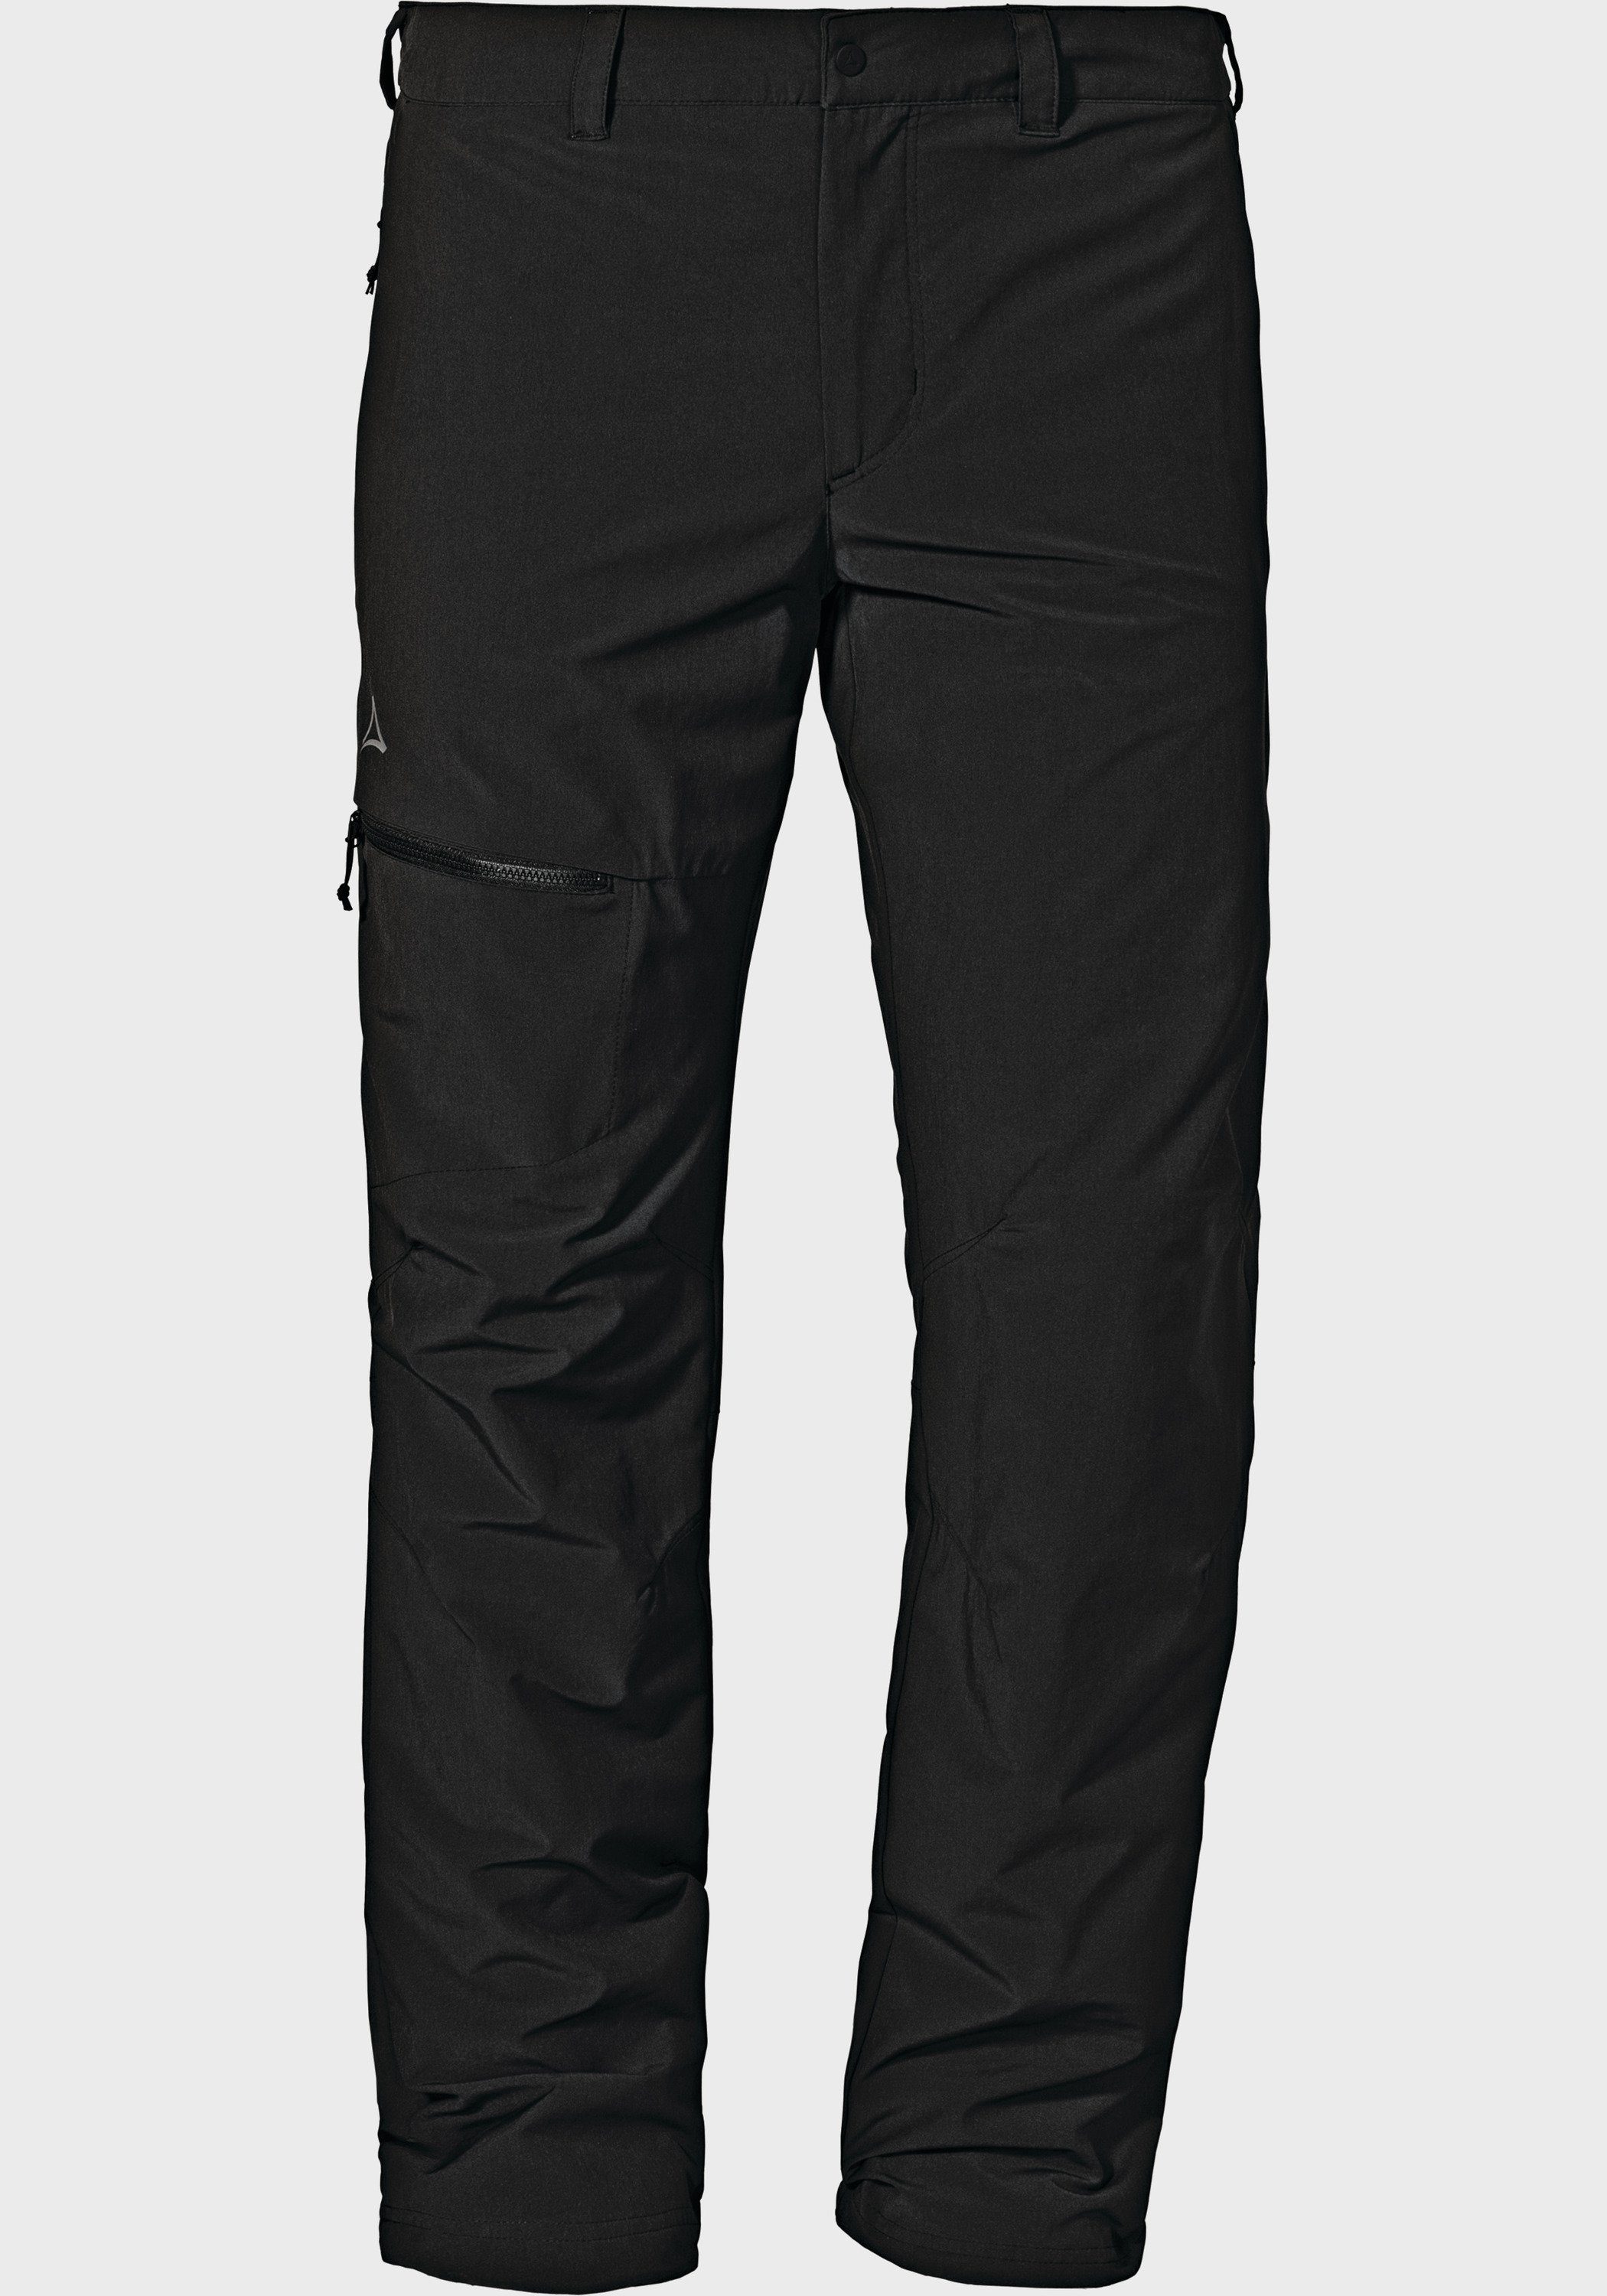 Schöffel Outdoorhose Pants Koper1 Warm M schwarz